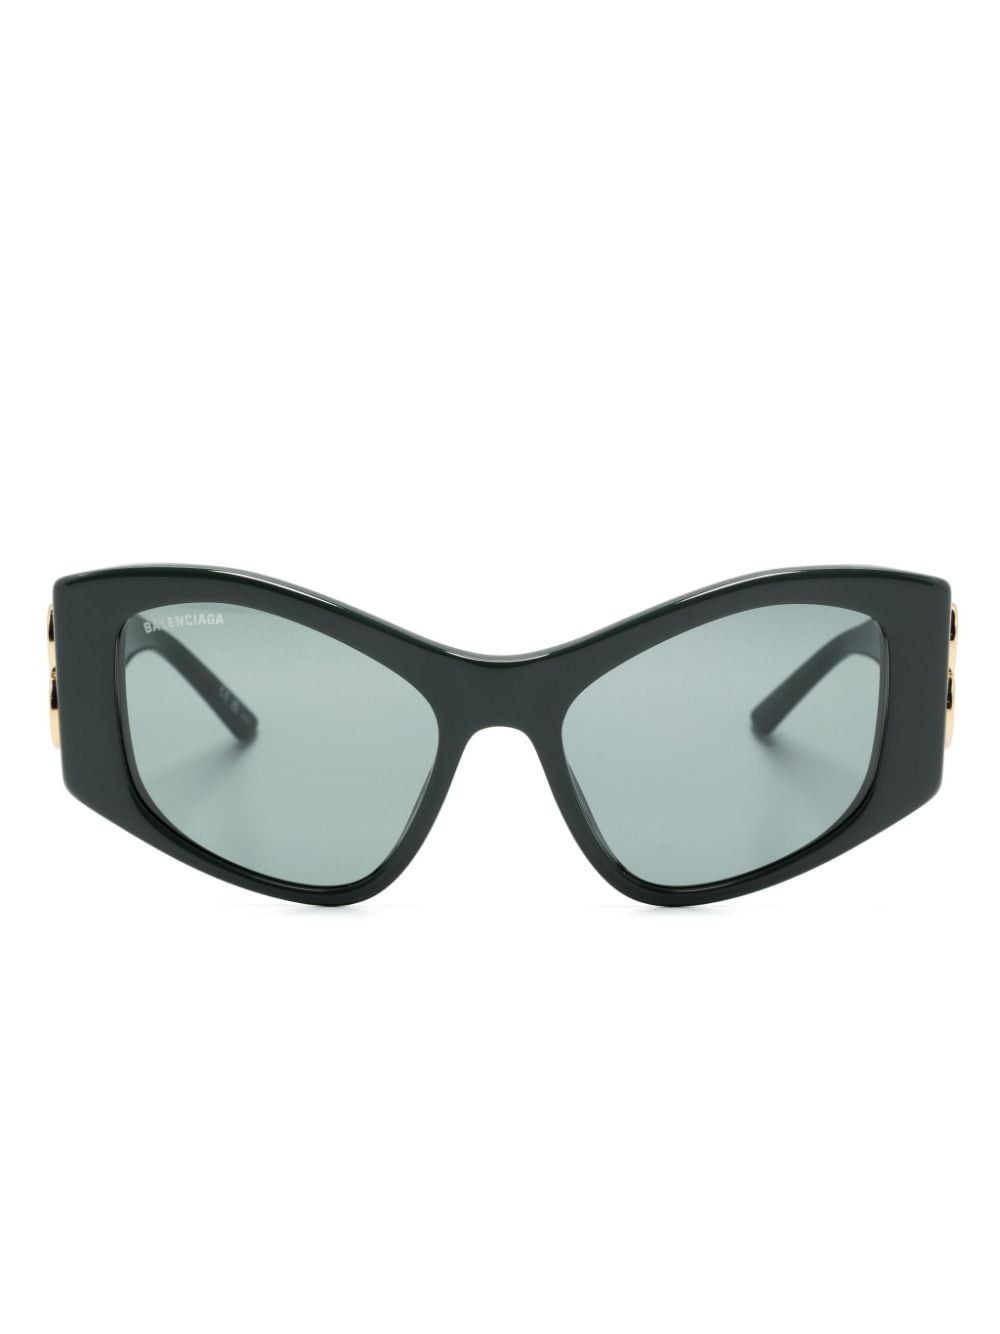 Balenciaga Eyewear Dynasty XL D-frame sunglasses - Green von Balenciaga Eyewear